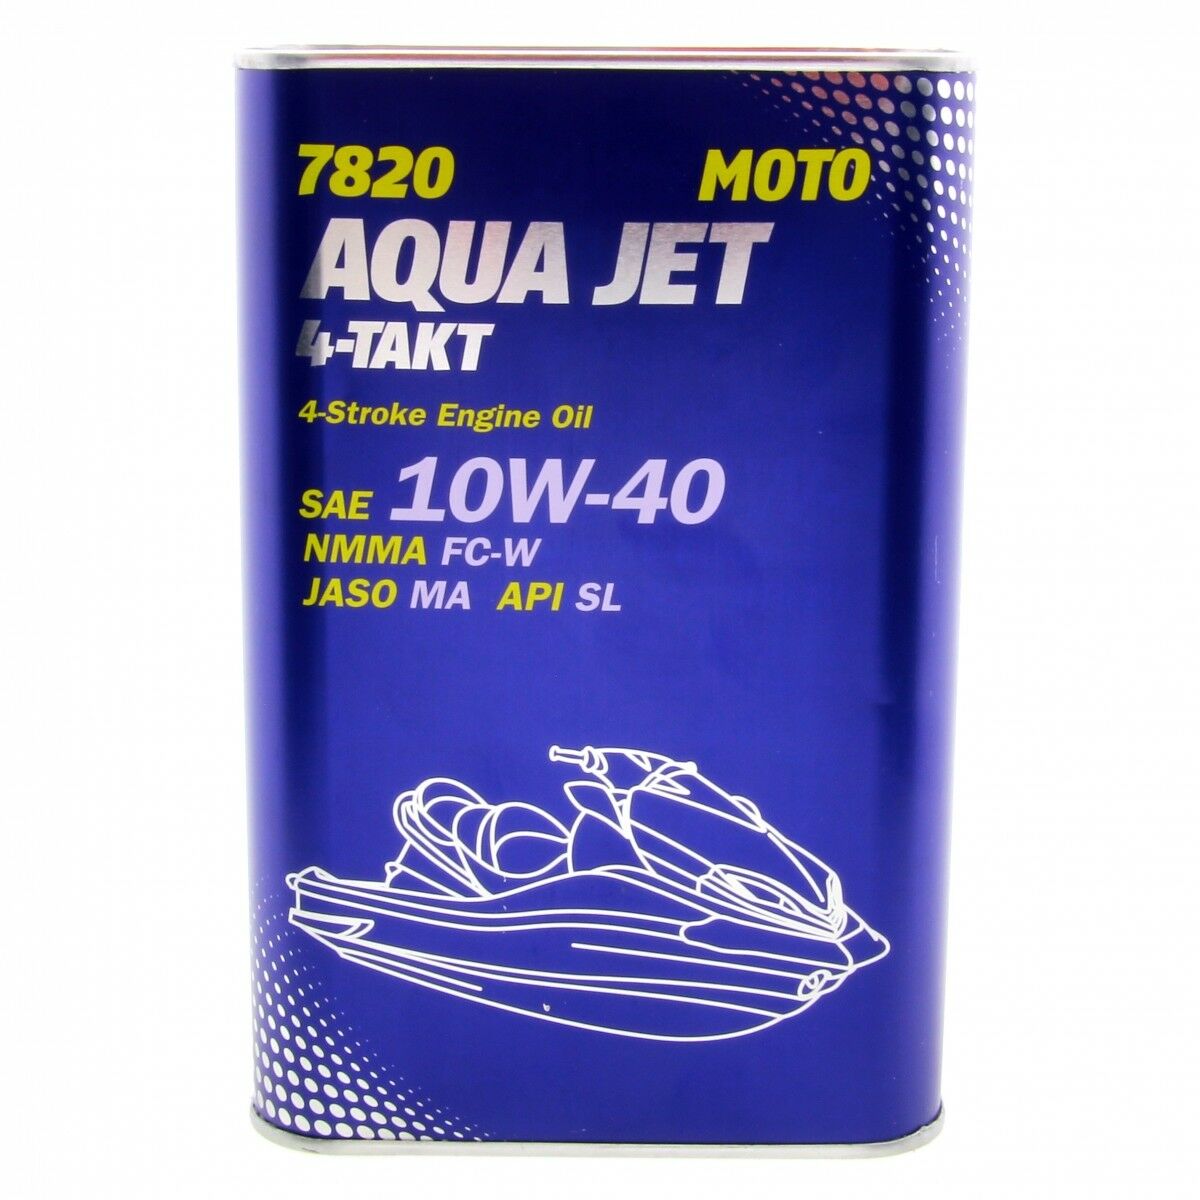 10 Liter (10x1) MANNOL 7820 Aqua Jet 4-Takt 10W-40 API SL Motoröl 10W40